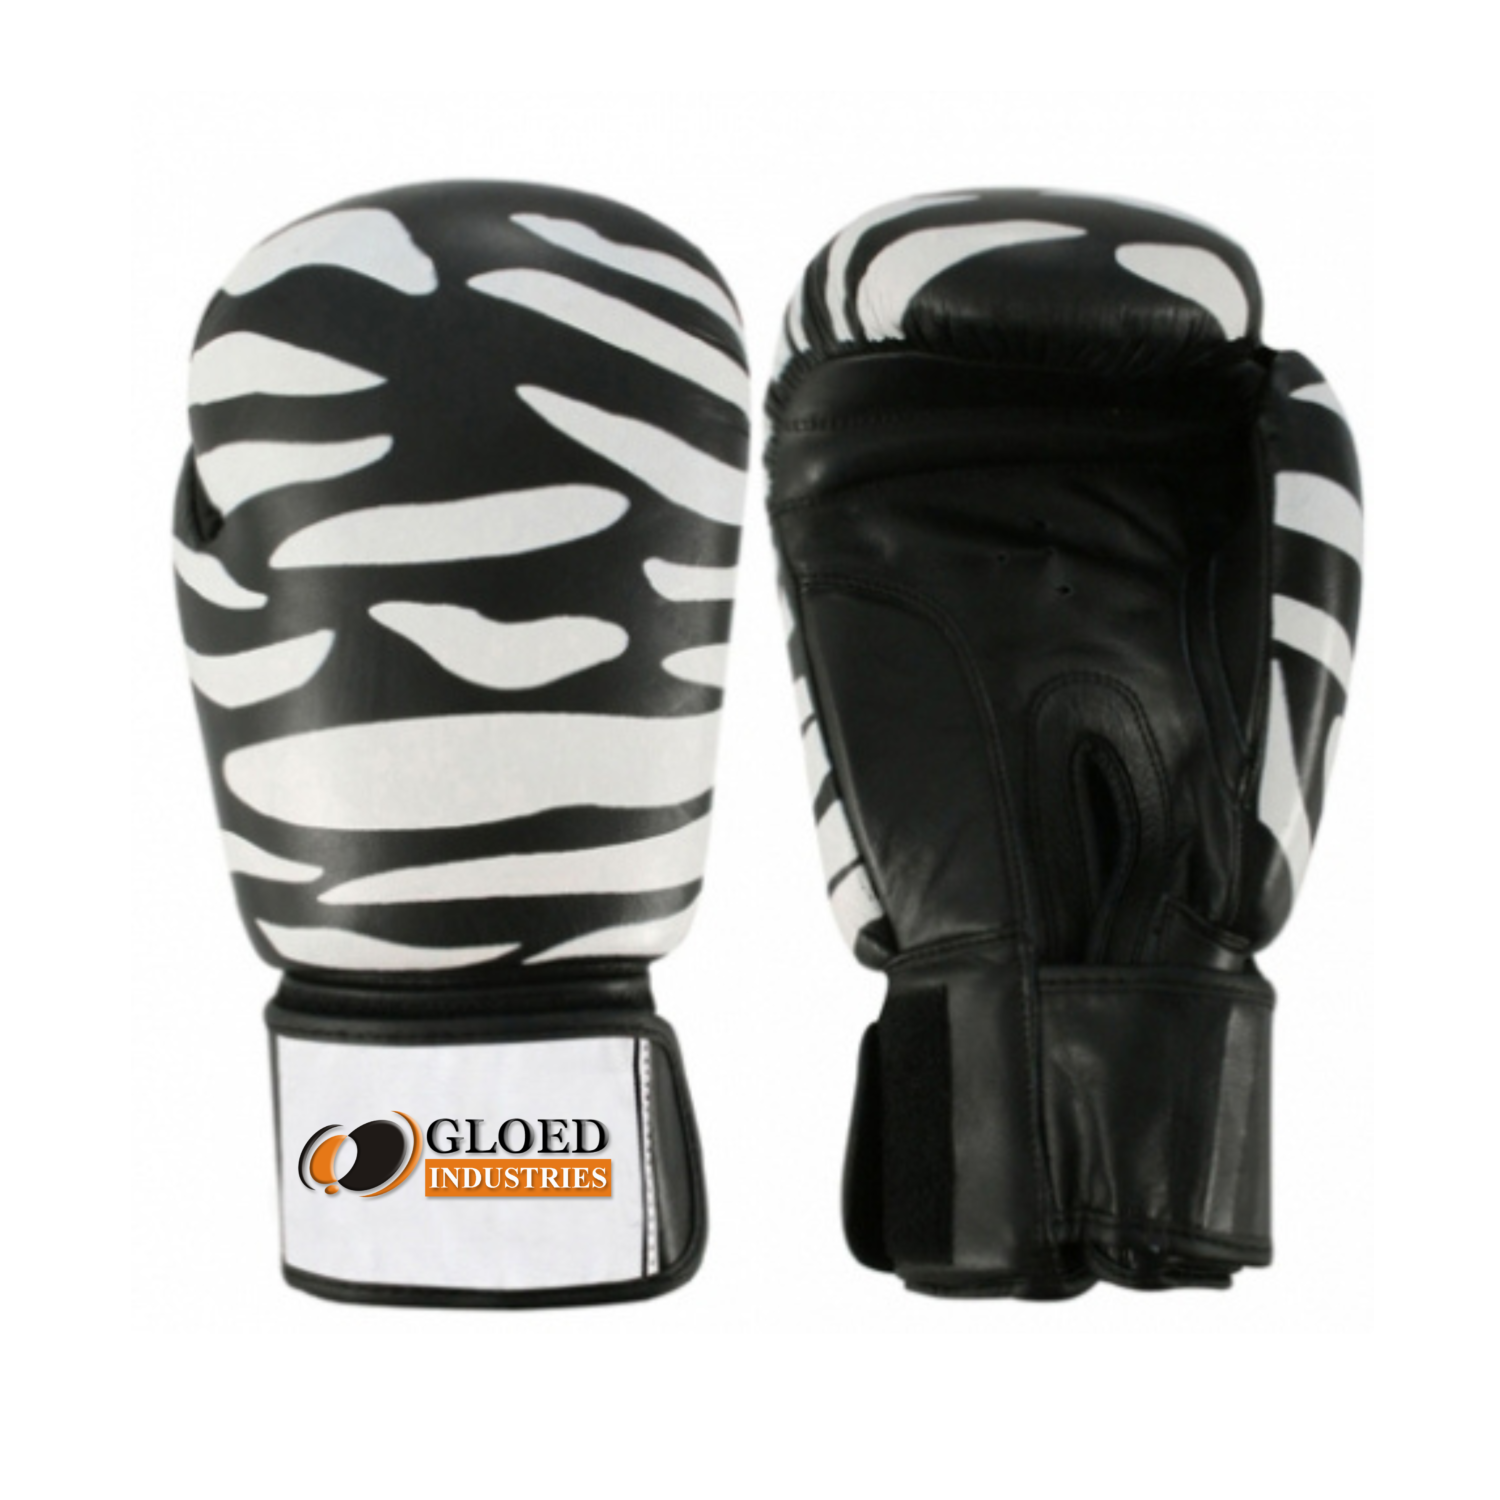 Customizing black boxing gloves with white lining zebra design.